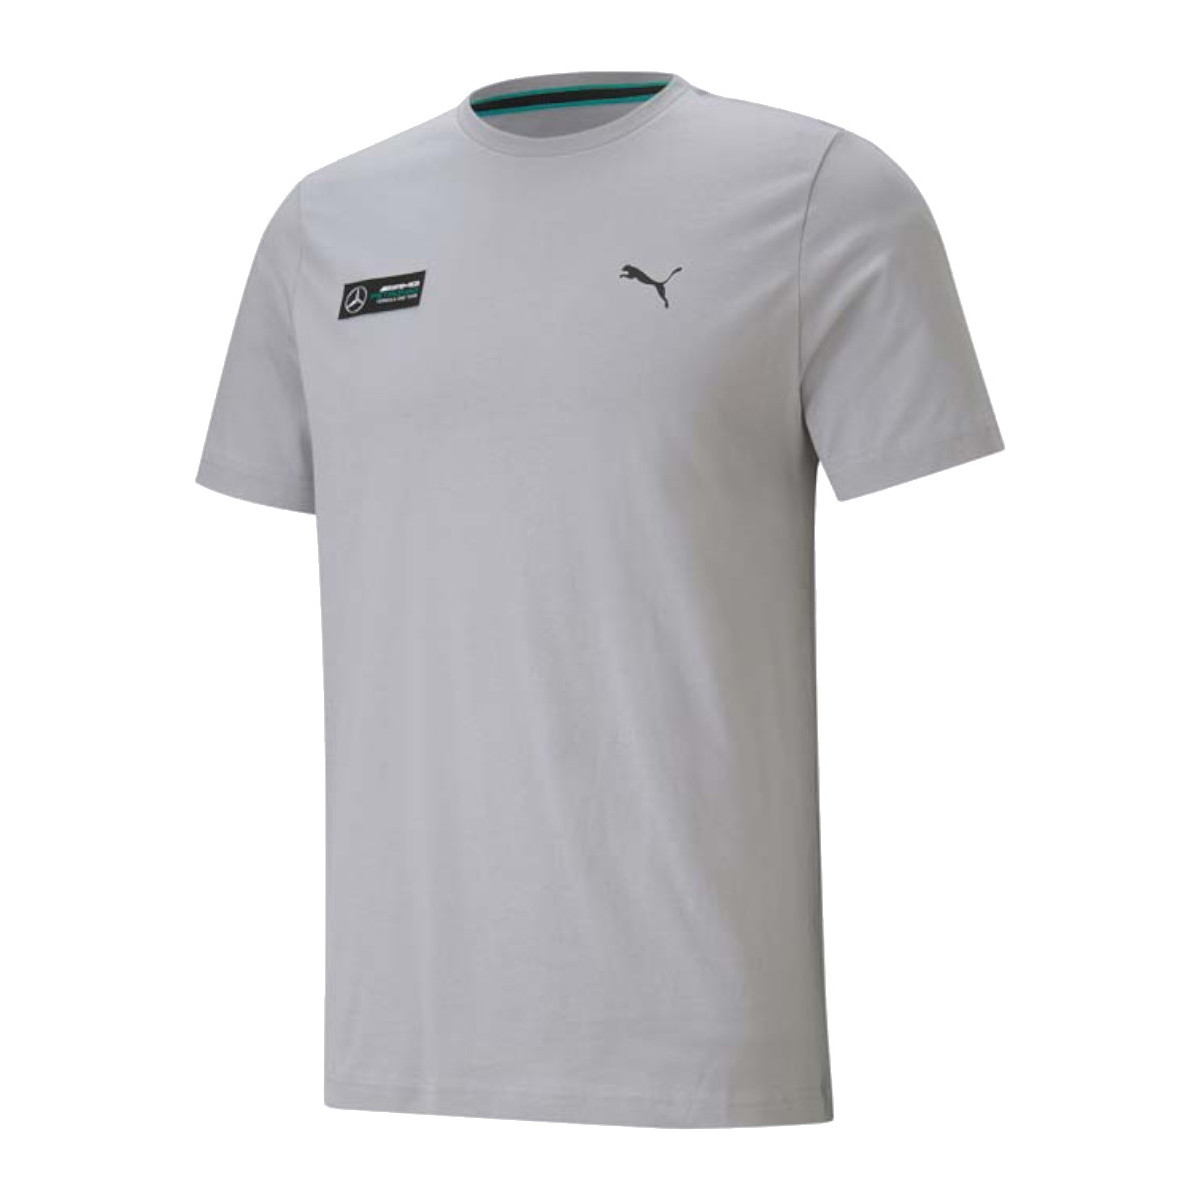 Vêtements Homme T-shirts manches courtes Puma Mercedes F1 Essentials Tee Gris